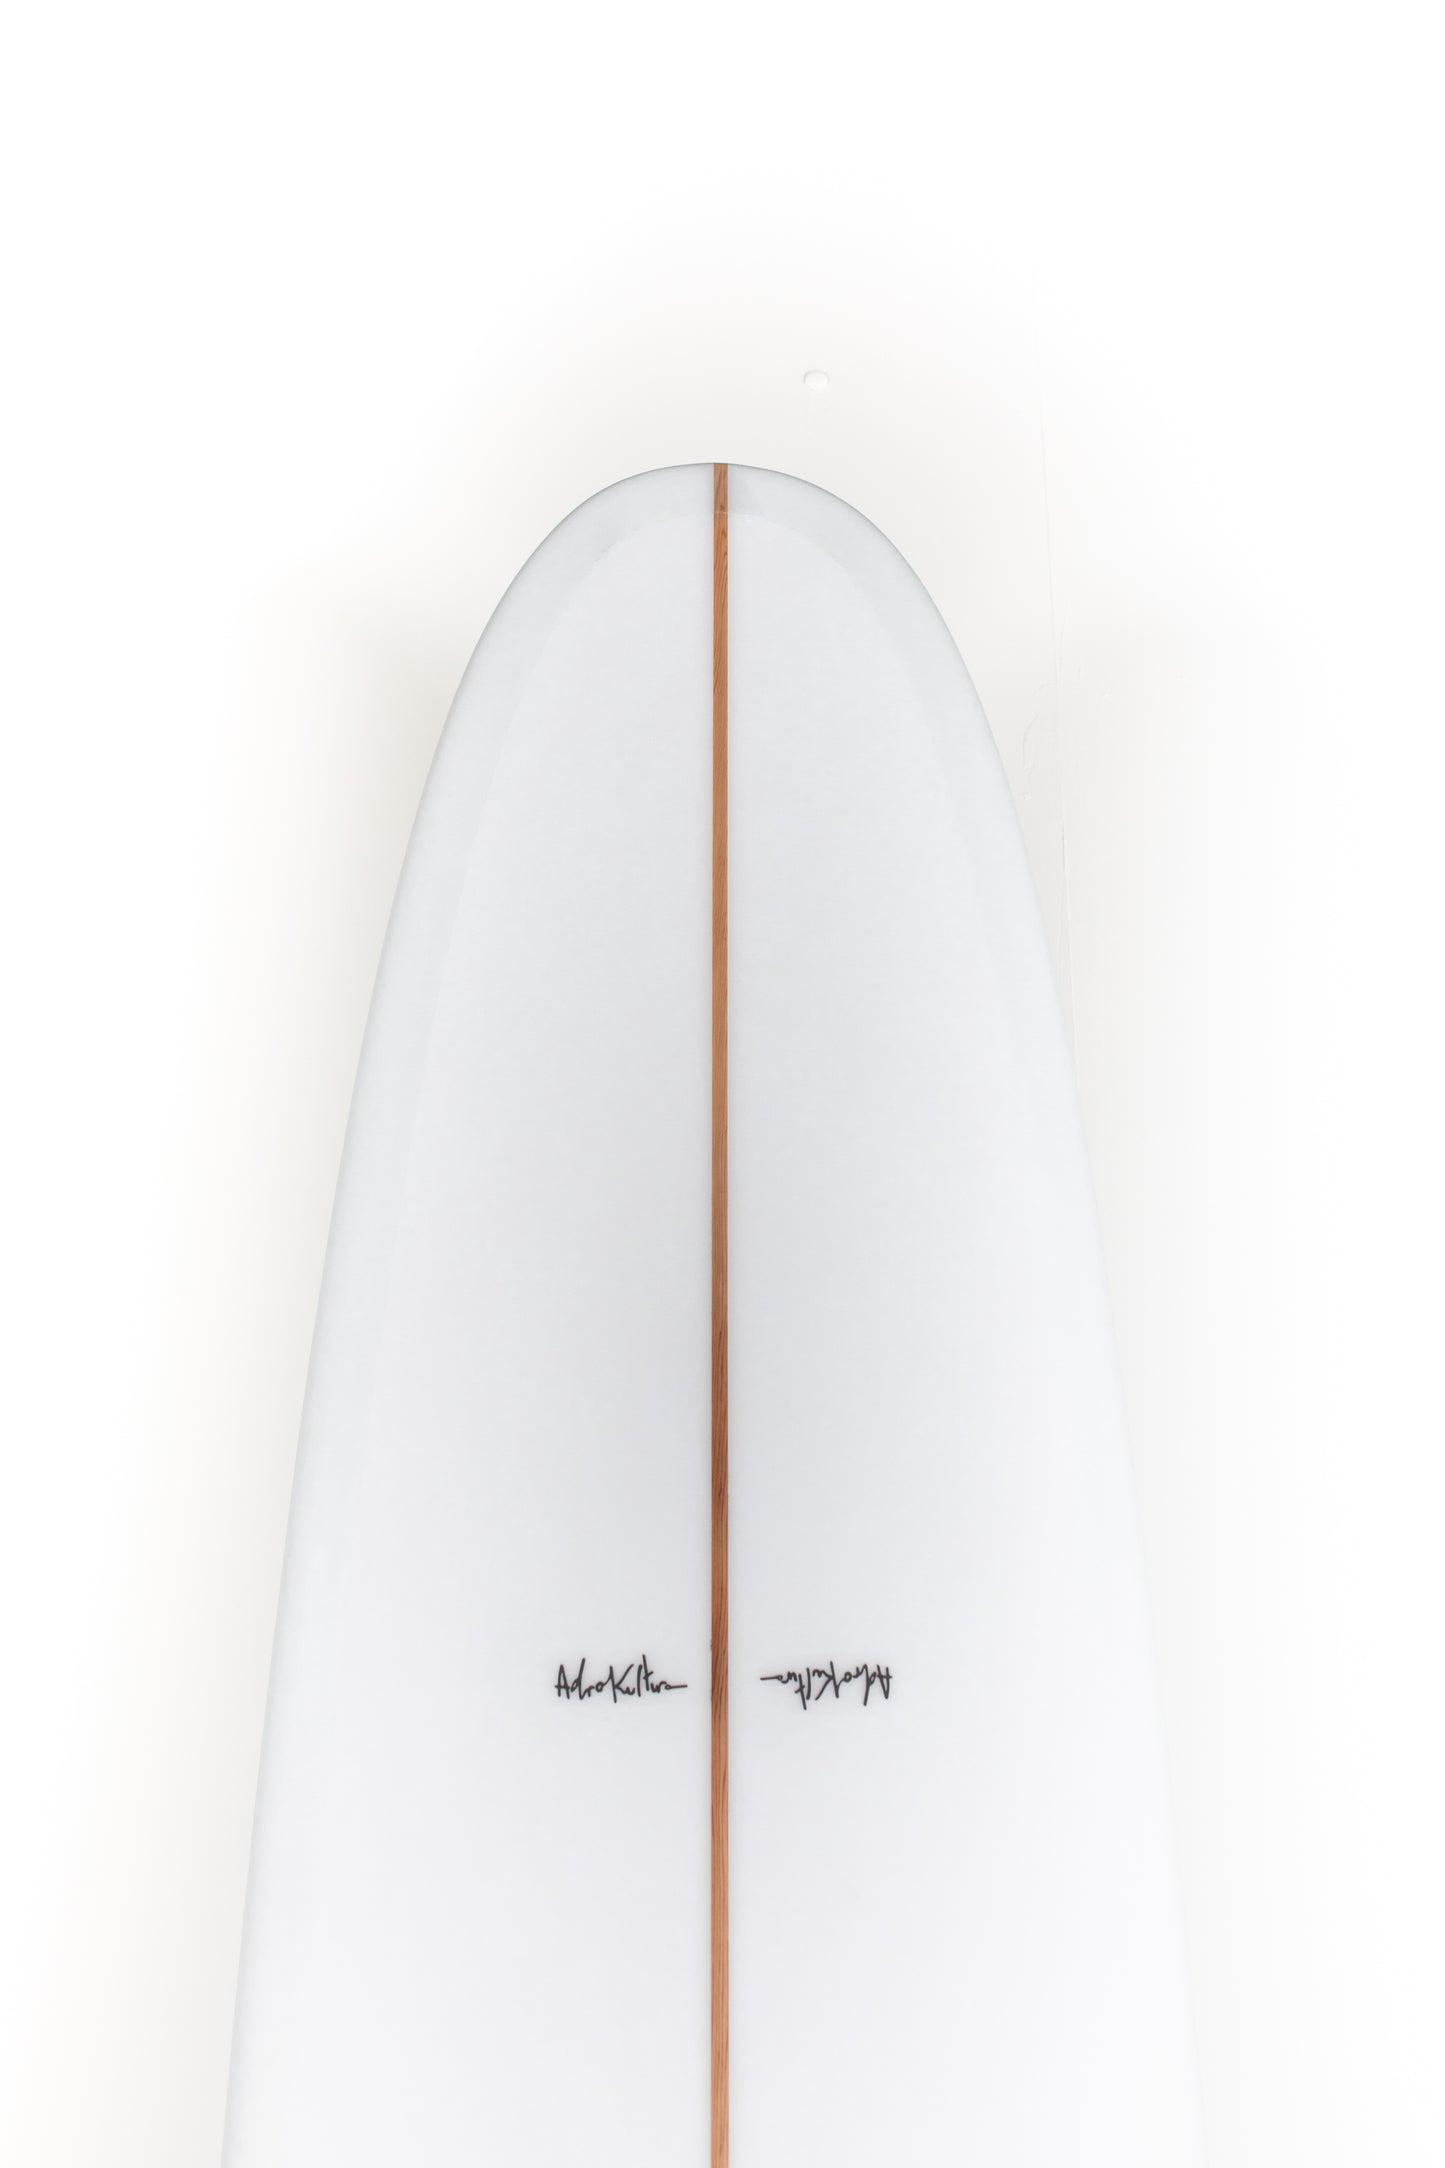 
                  
                    Pukas Surf Shop - Adrokultura Surfboards - BOB'S - 9'2" x 22 1/2 x 2 7/8 - BOBS92
                  
                